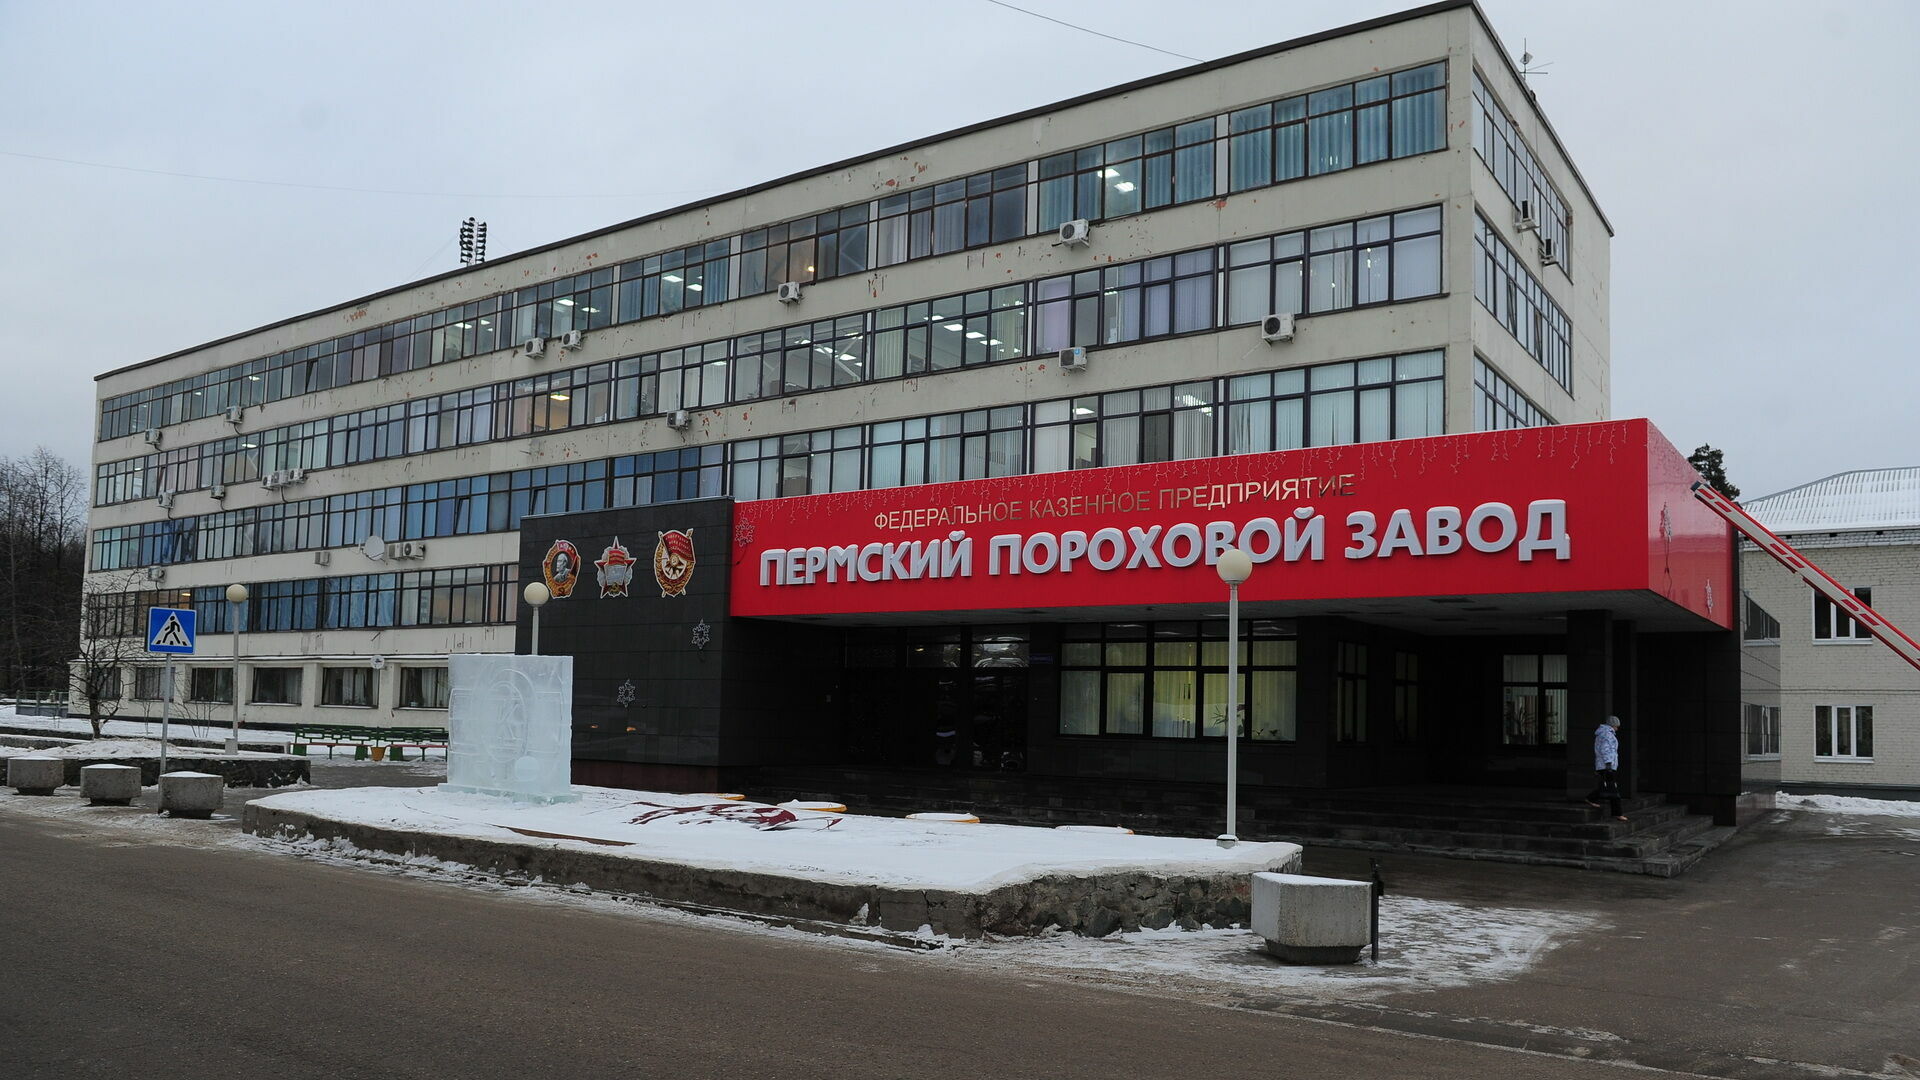 СМИ: Работники Пермского порохового завода погибли не от взрыва газового баллона